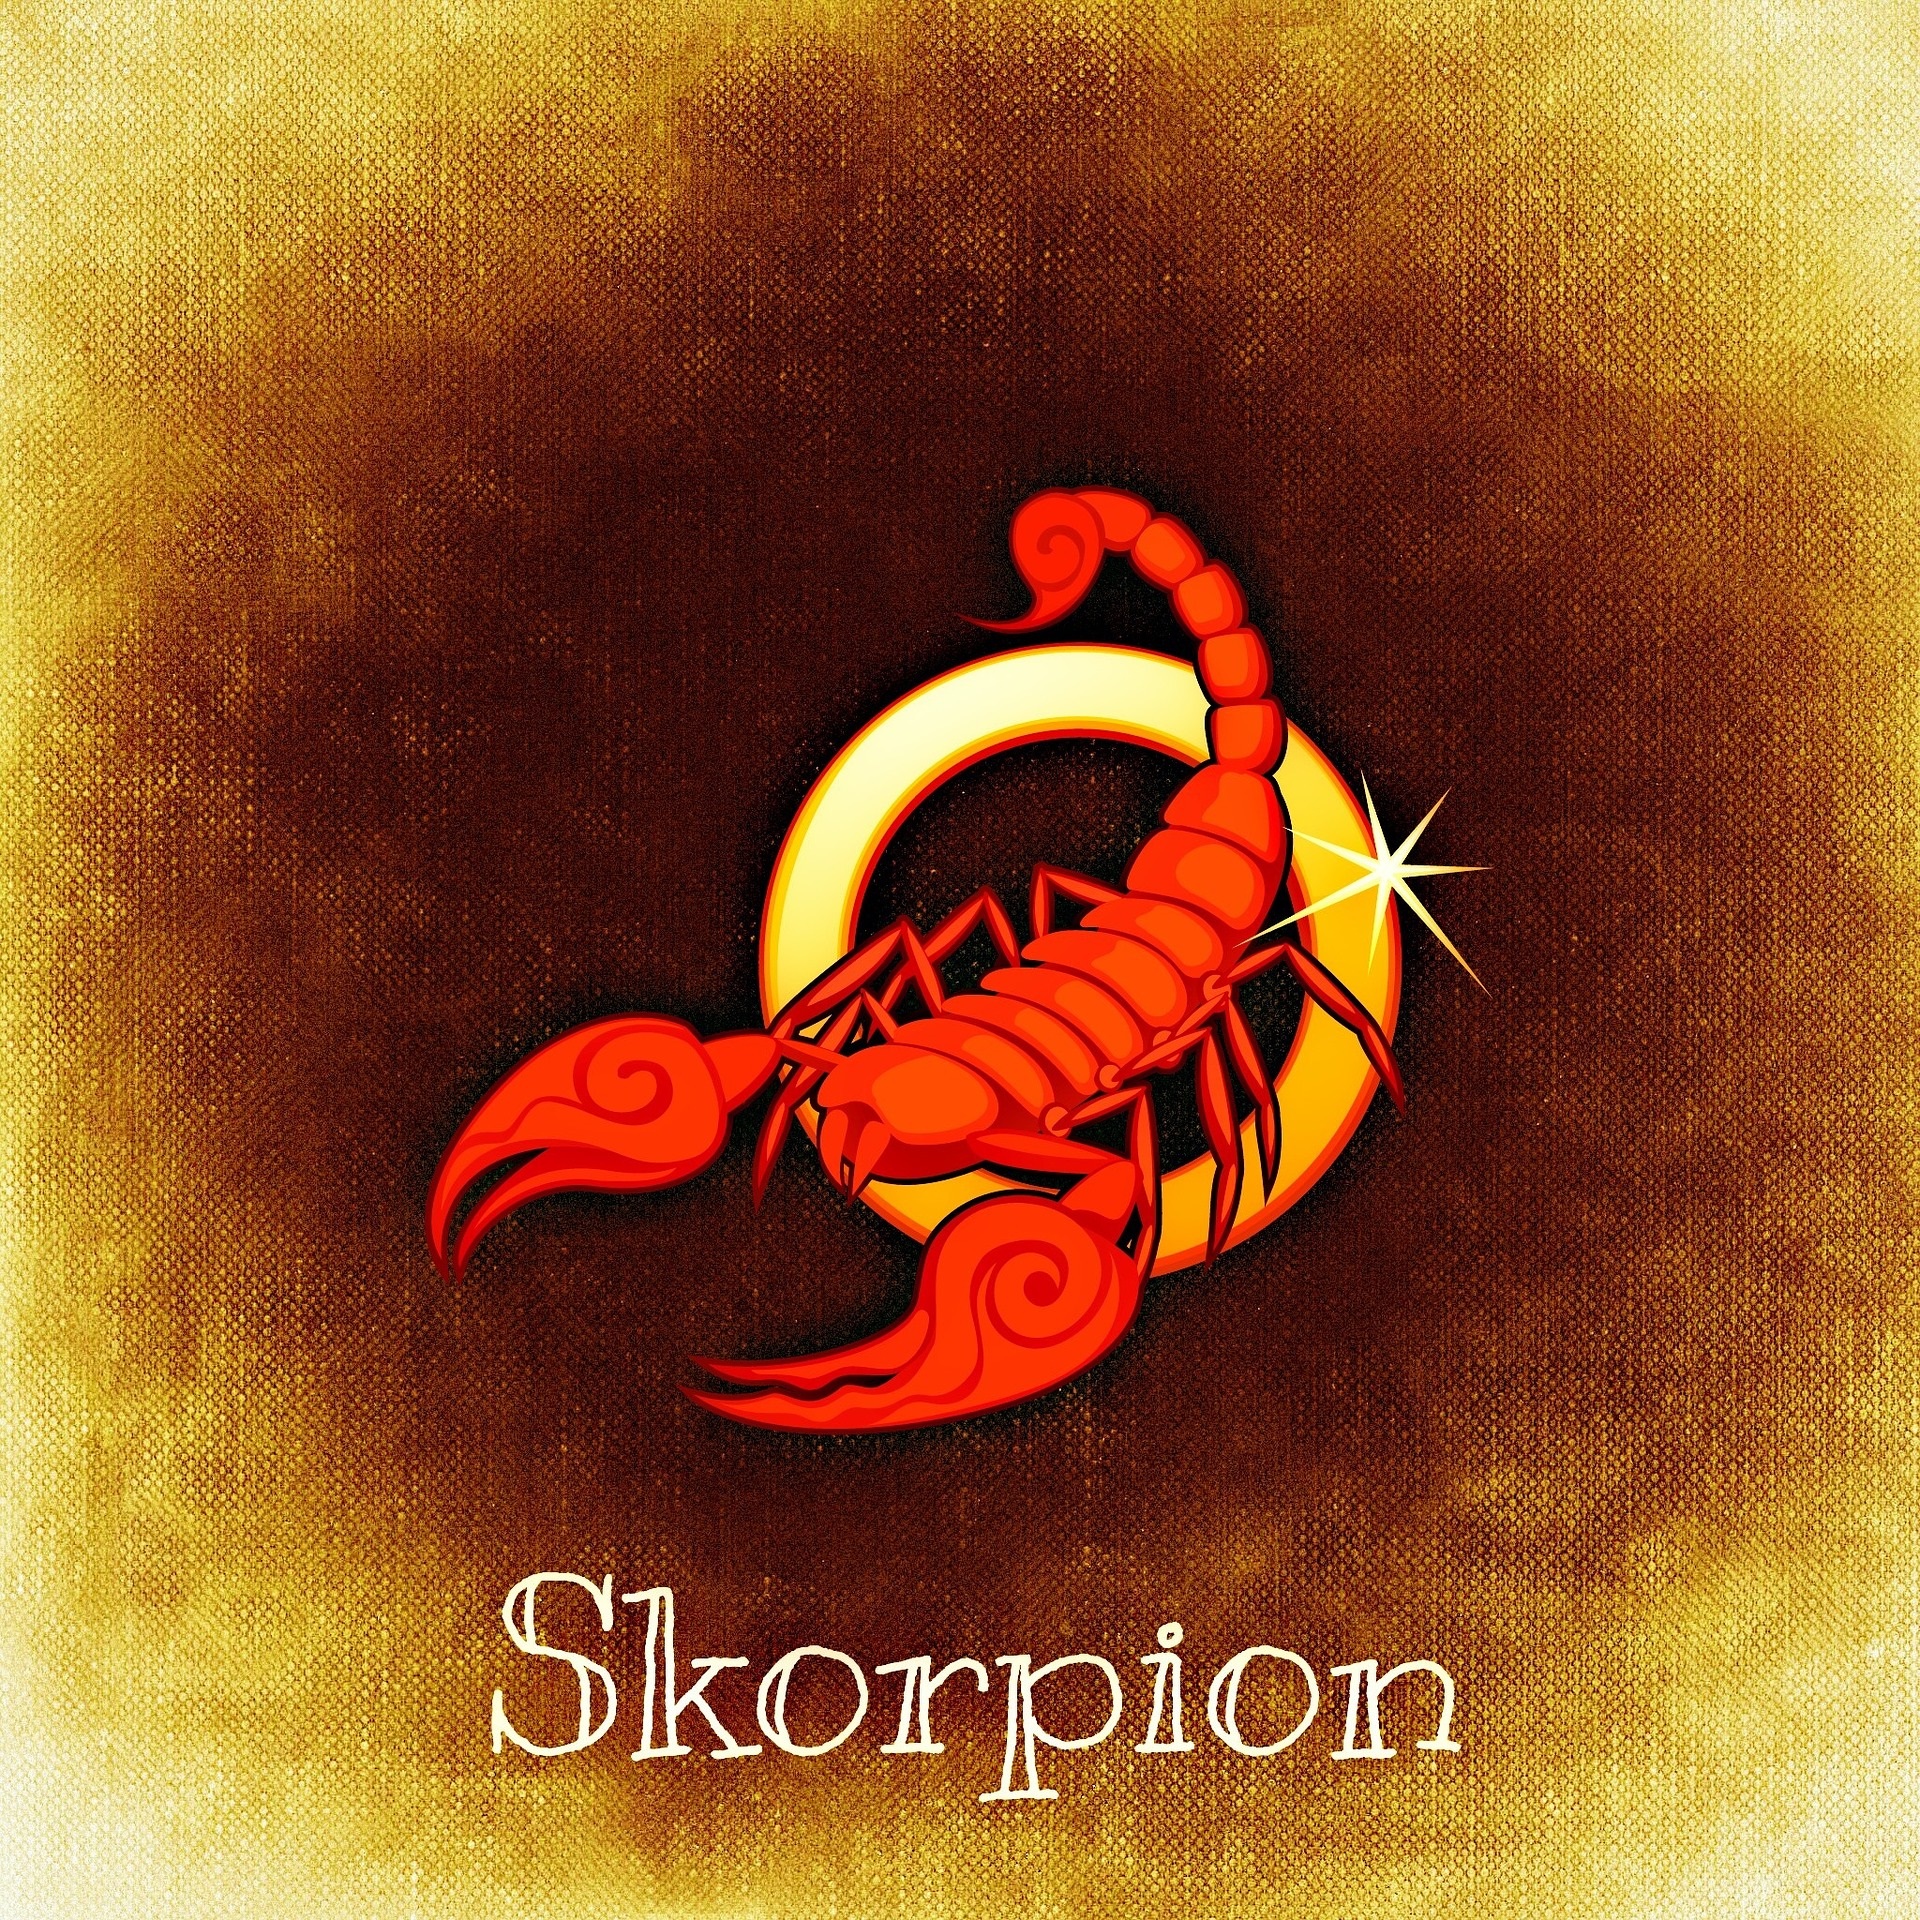 Скорпион<br />
<br />
Скорпионите имат дразнещия навик да очакват всички да споделят с тях най-дълбоките си и тъмни тайни, като същевременно отказват да кажат своите на когото и да било. Освен това е дразнещо, че Скорпионите нямат проблем да манипулират хората за собствените си цели. Никой не обича да бъде използван и Скорпионът не би искал това да се случи с него, но това не го спира.